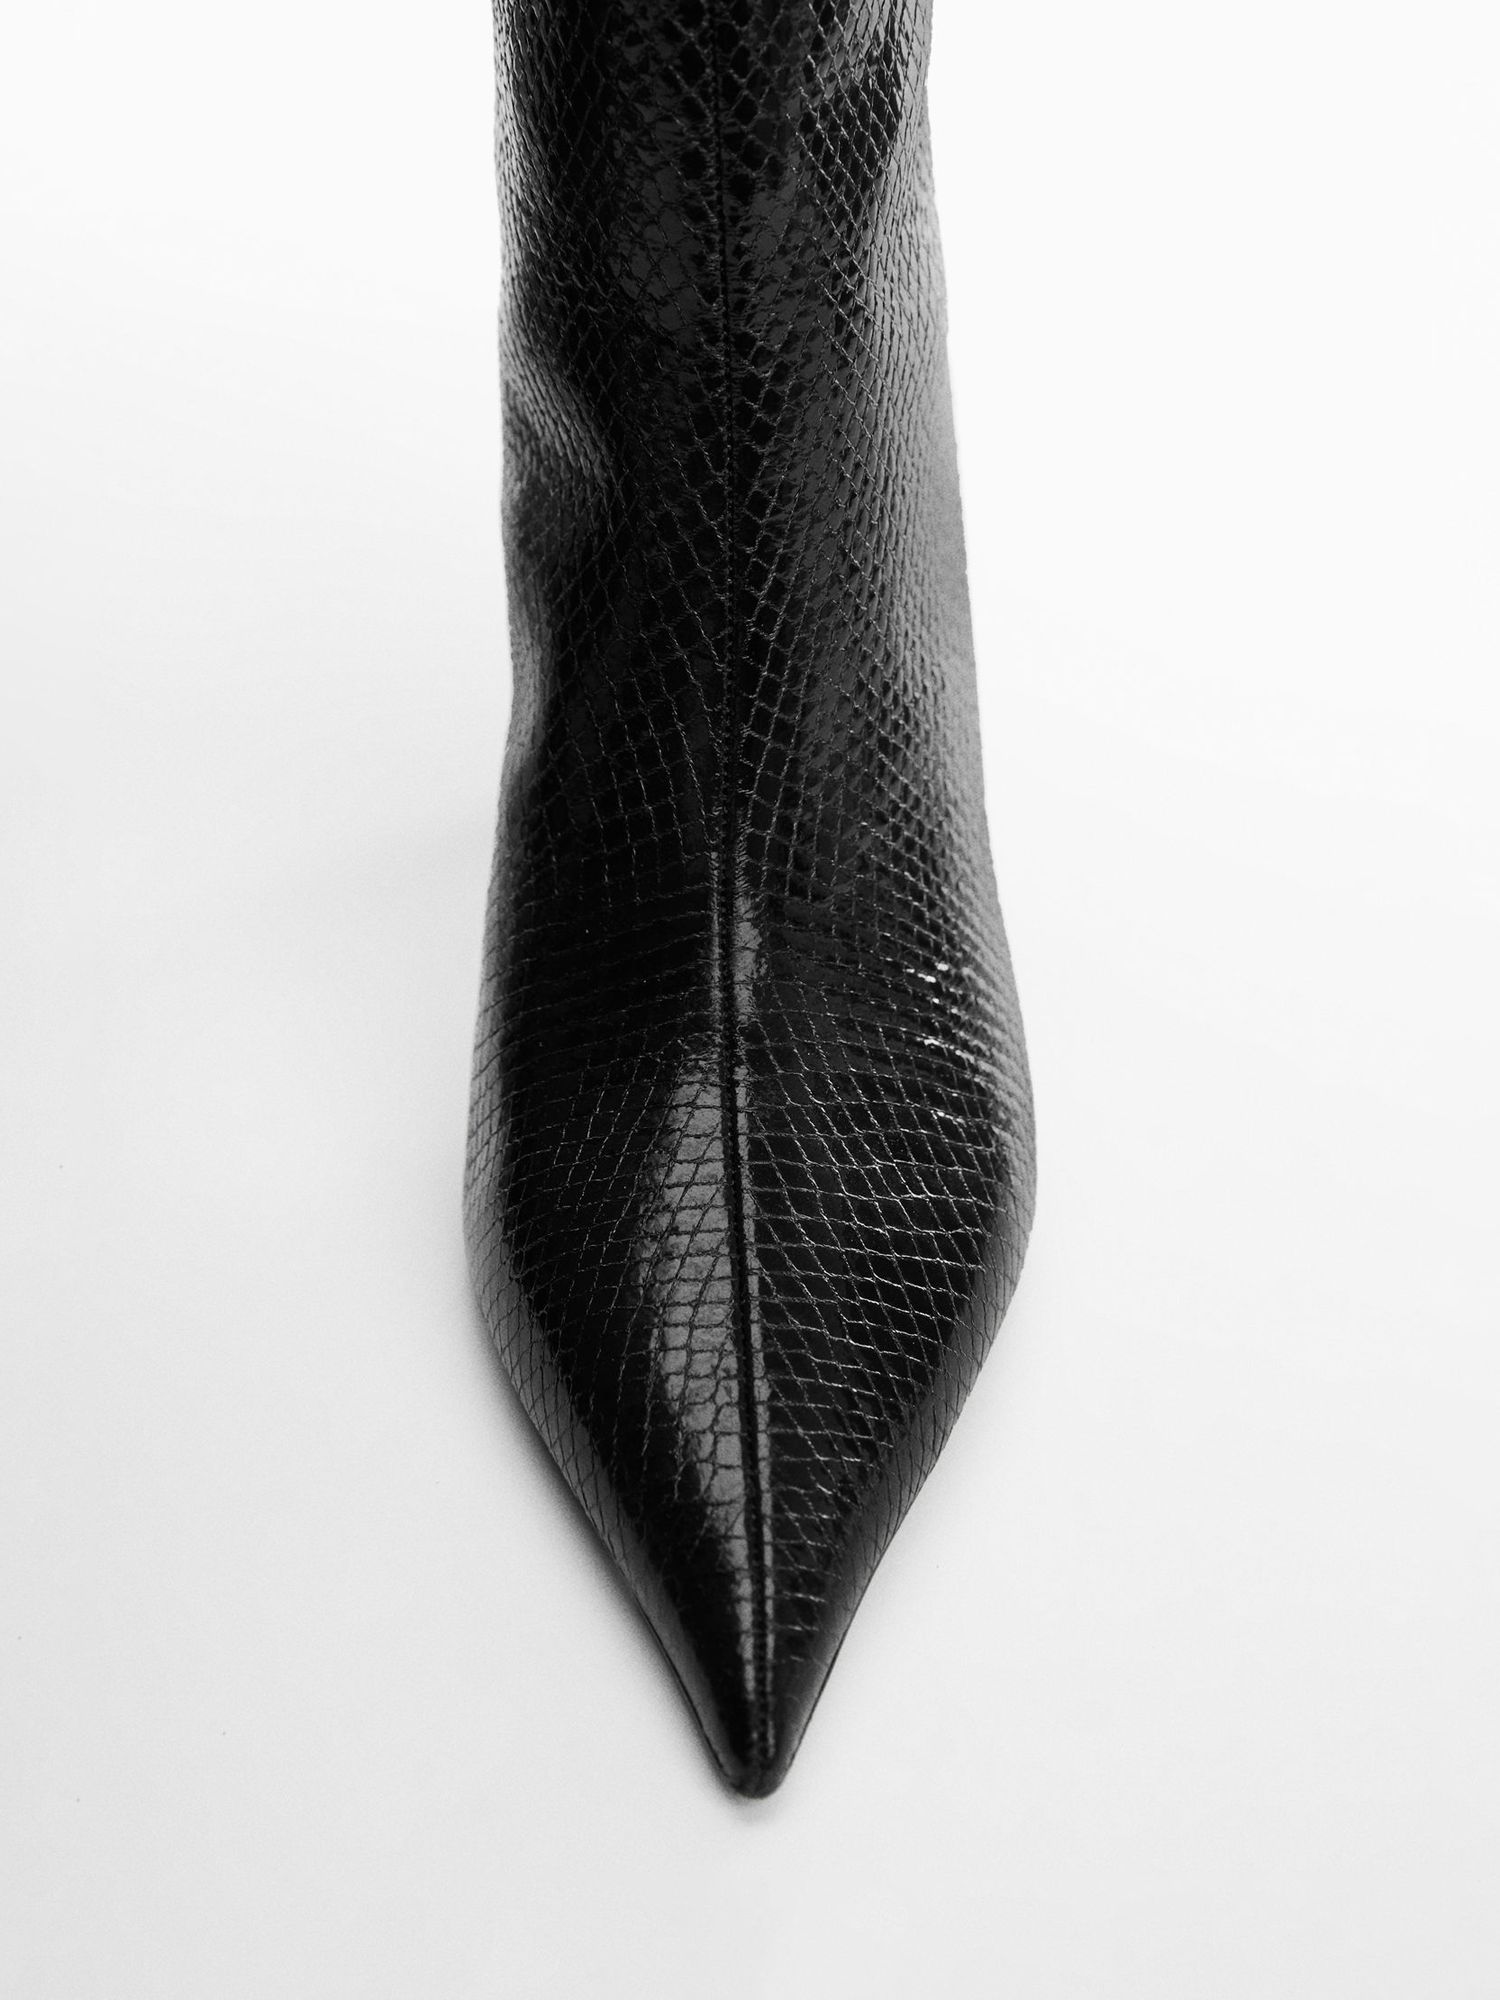 Mango Amalia Snakeskin Pointed Boots, Black, 5